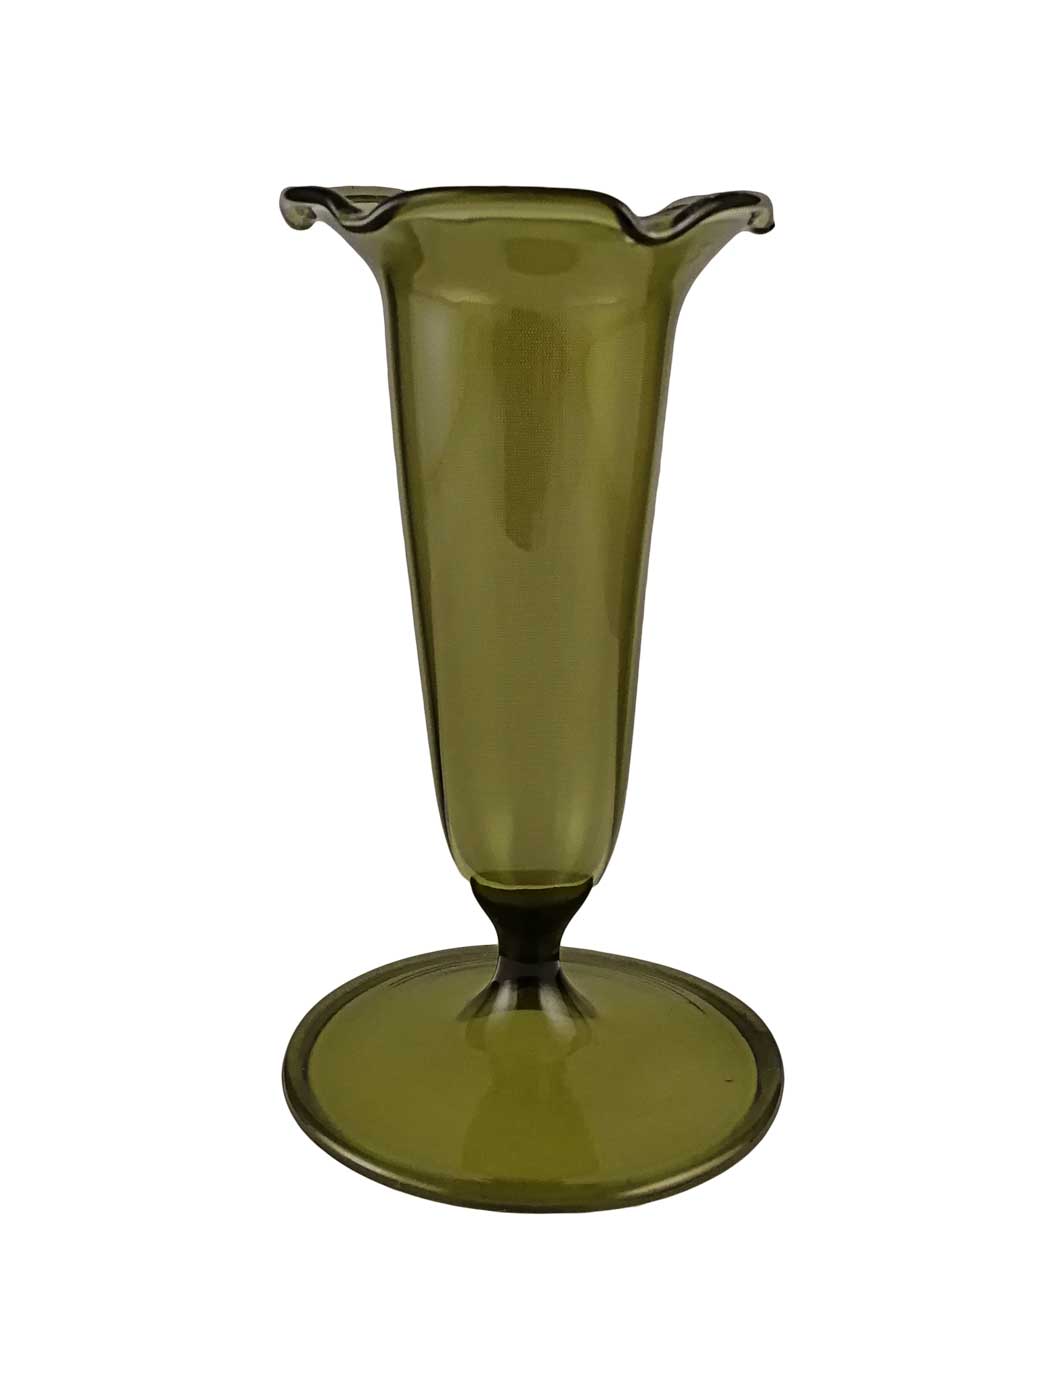 Vase olivgrün länglich